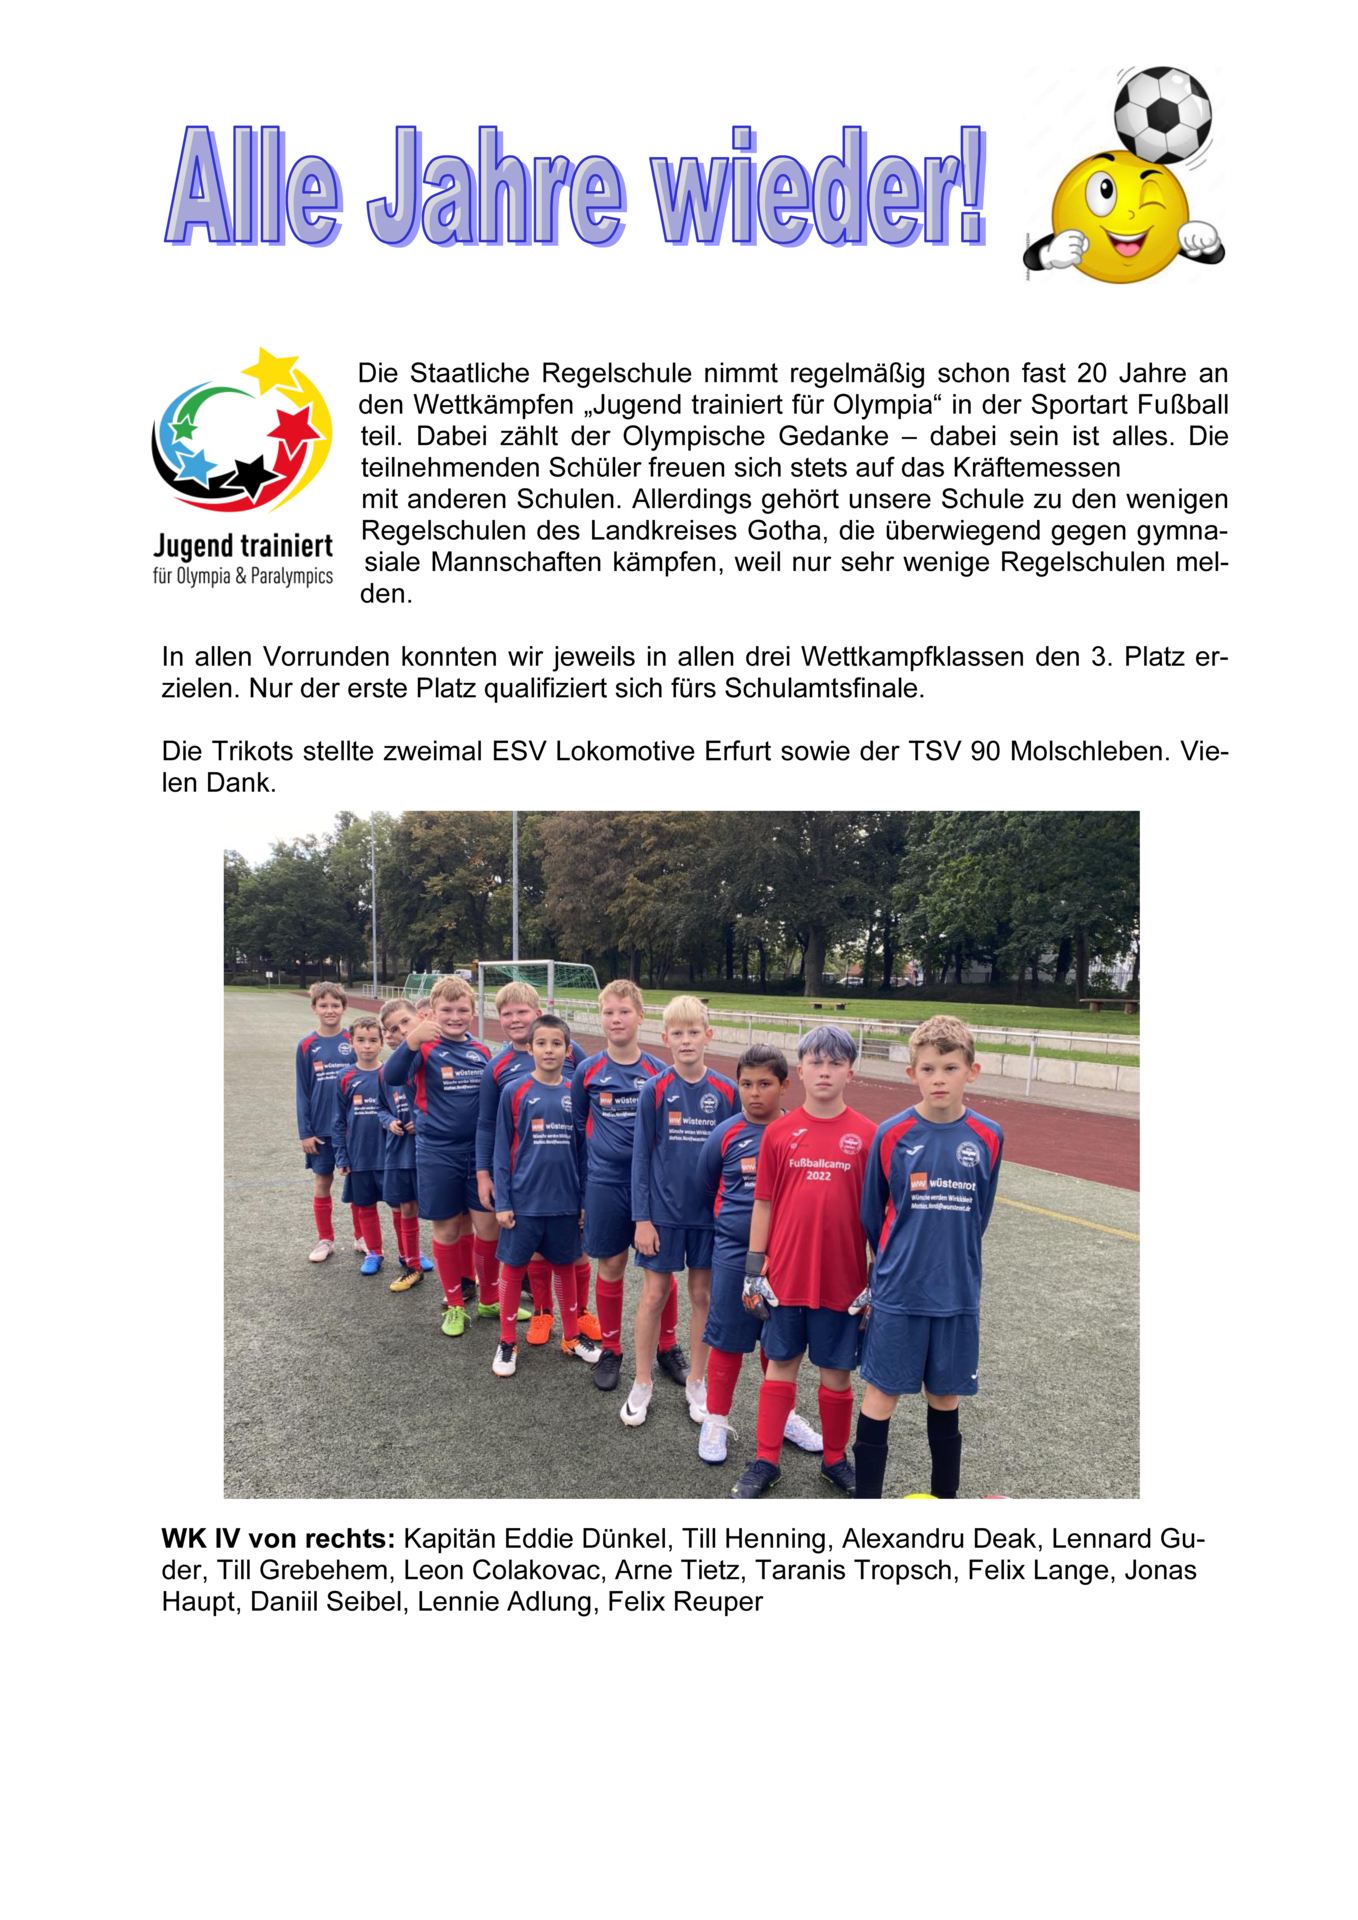 Alle Jahre wieder! Wettkämpfe „Jugend trainiert für Olympia“ Sportart Fußball_Seite_1